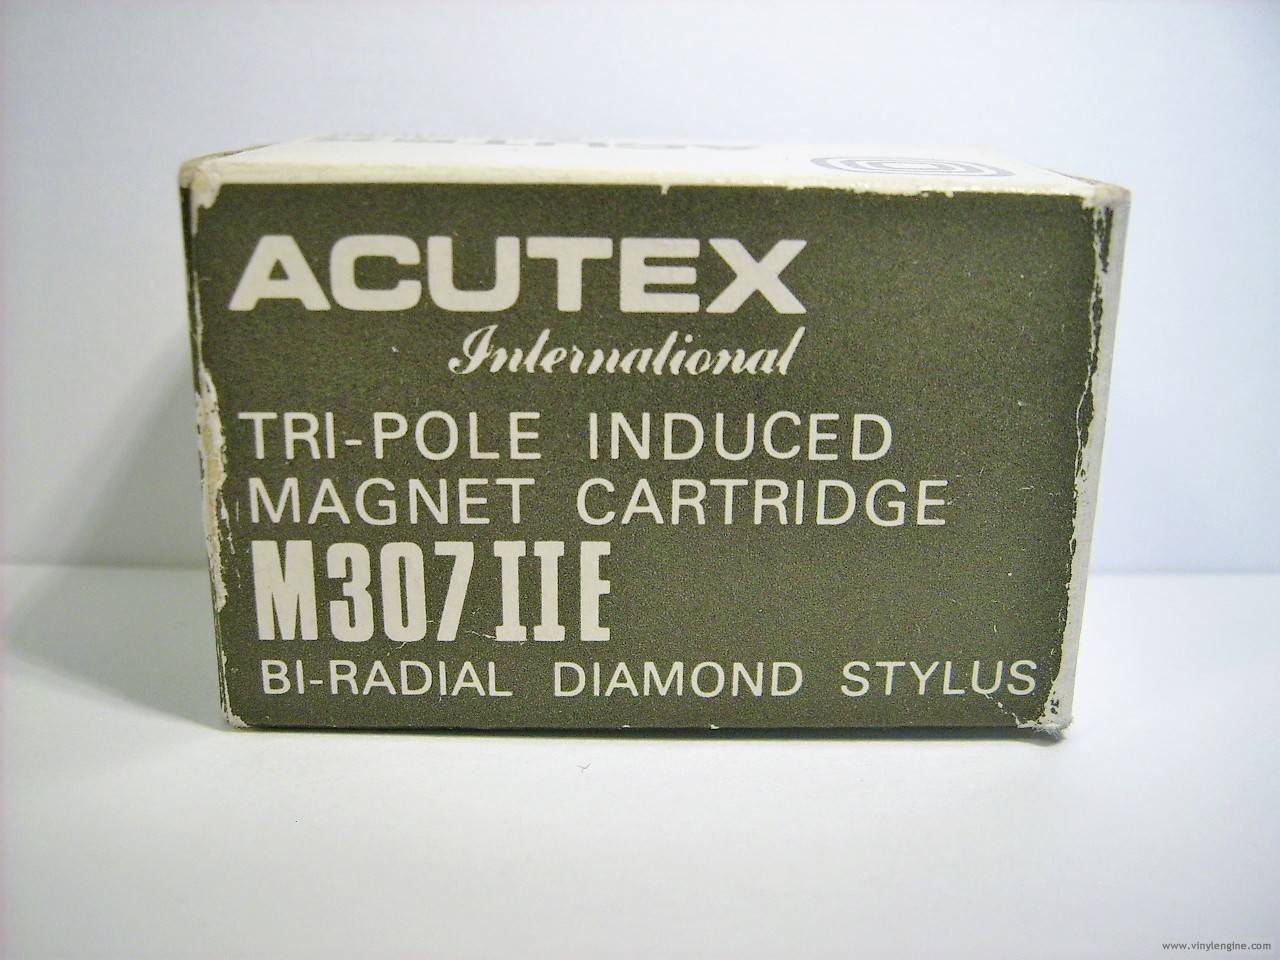 Acutex M307 IIE